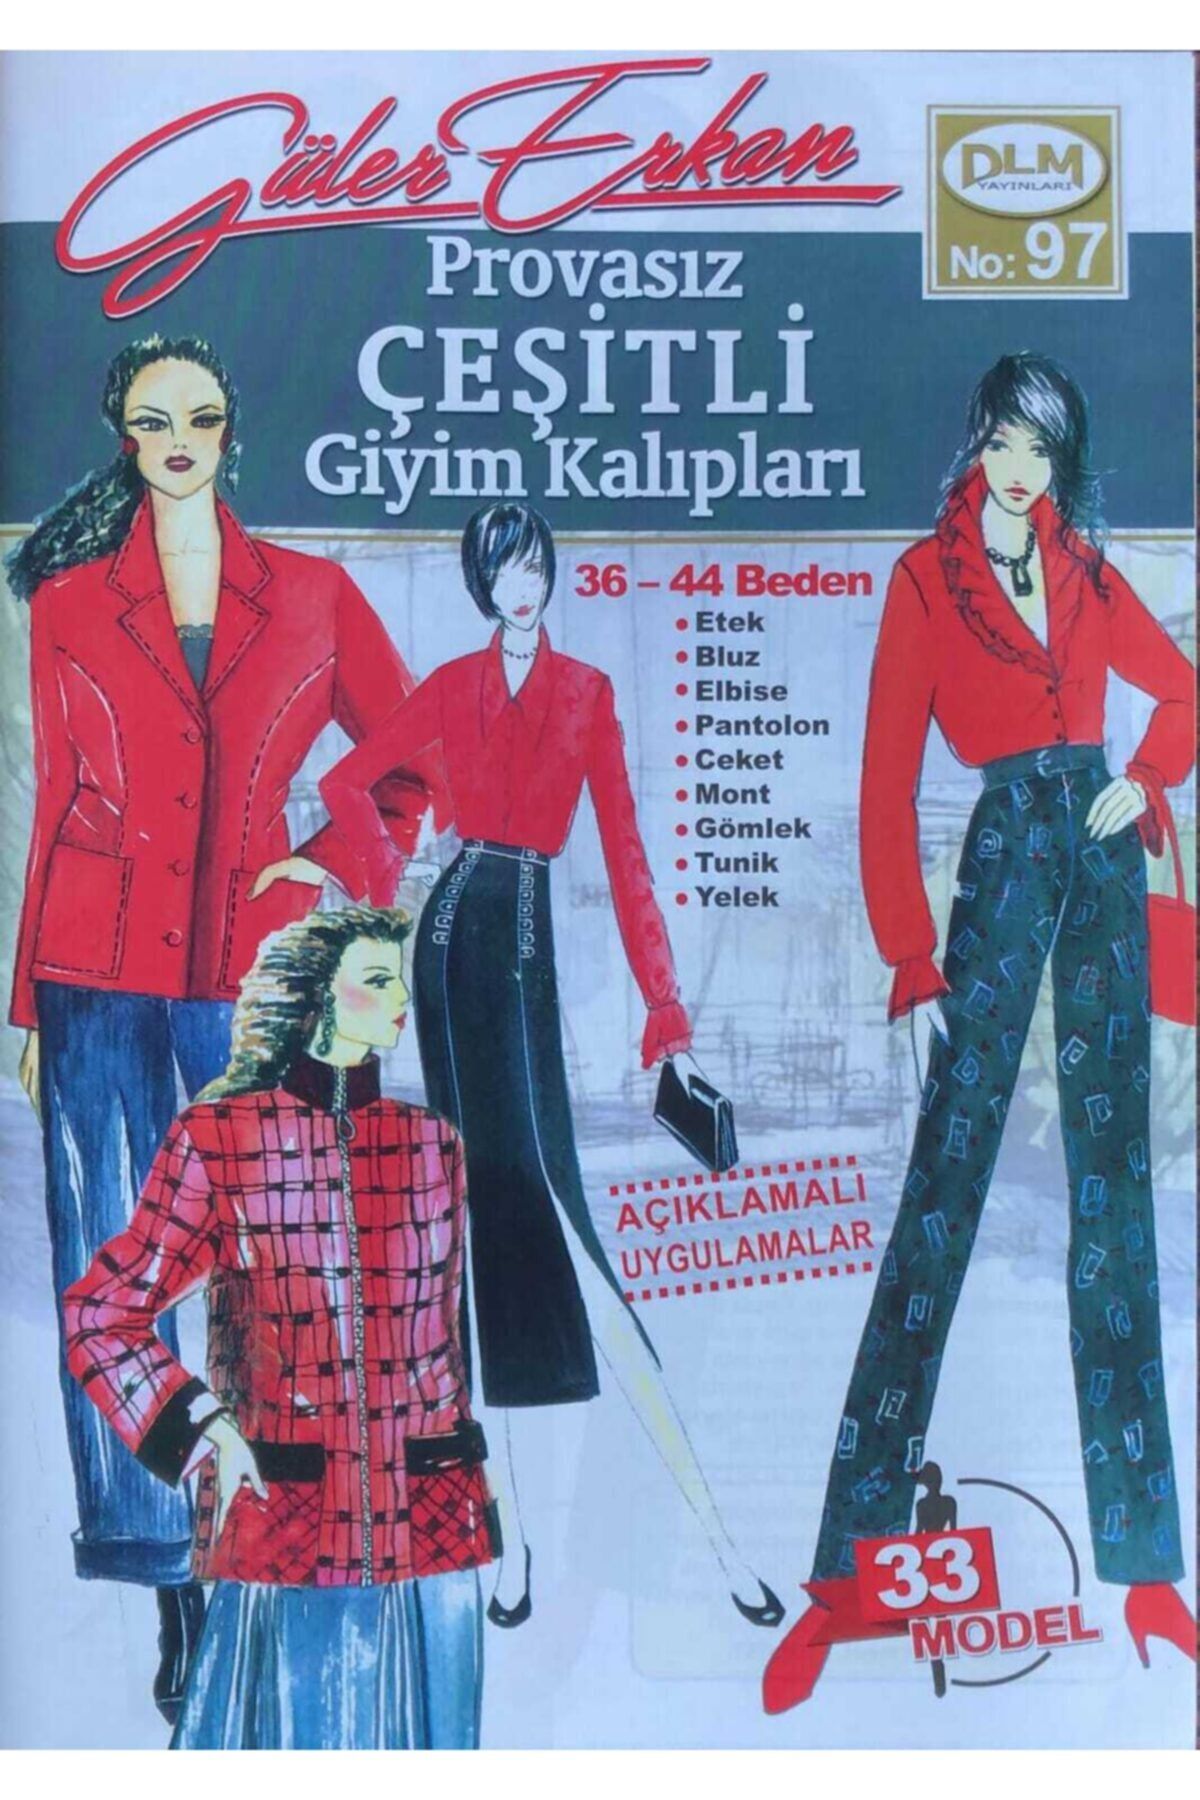 Dilem Yayınları Güler Erkan Provasız Çeşitli Giyim Kalıpları No: 97